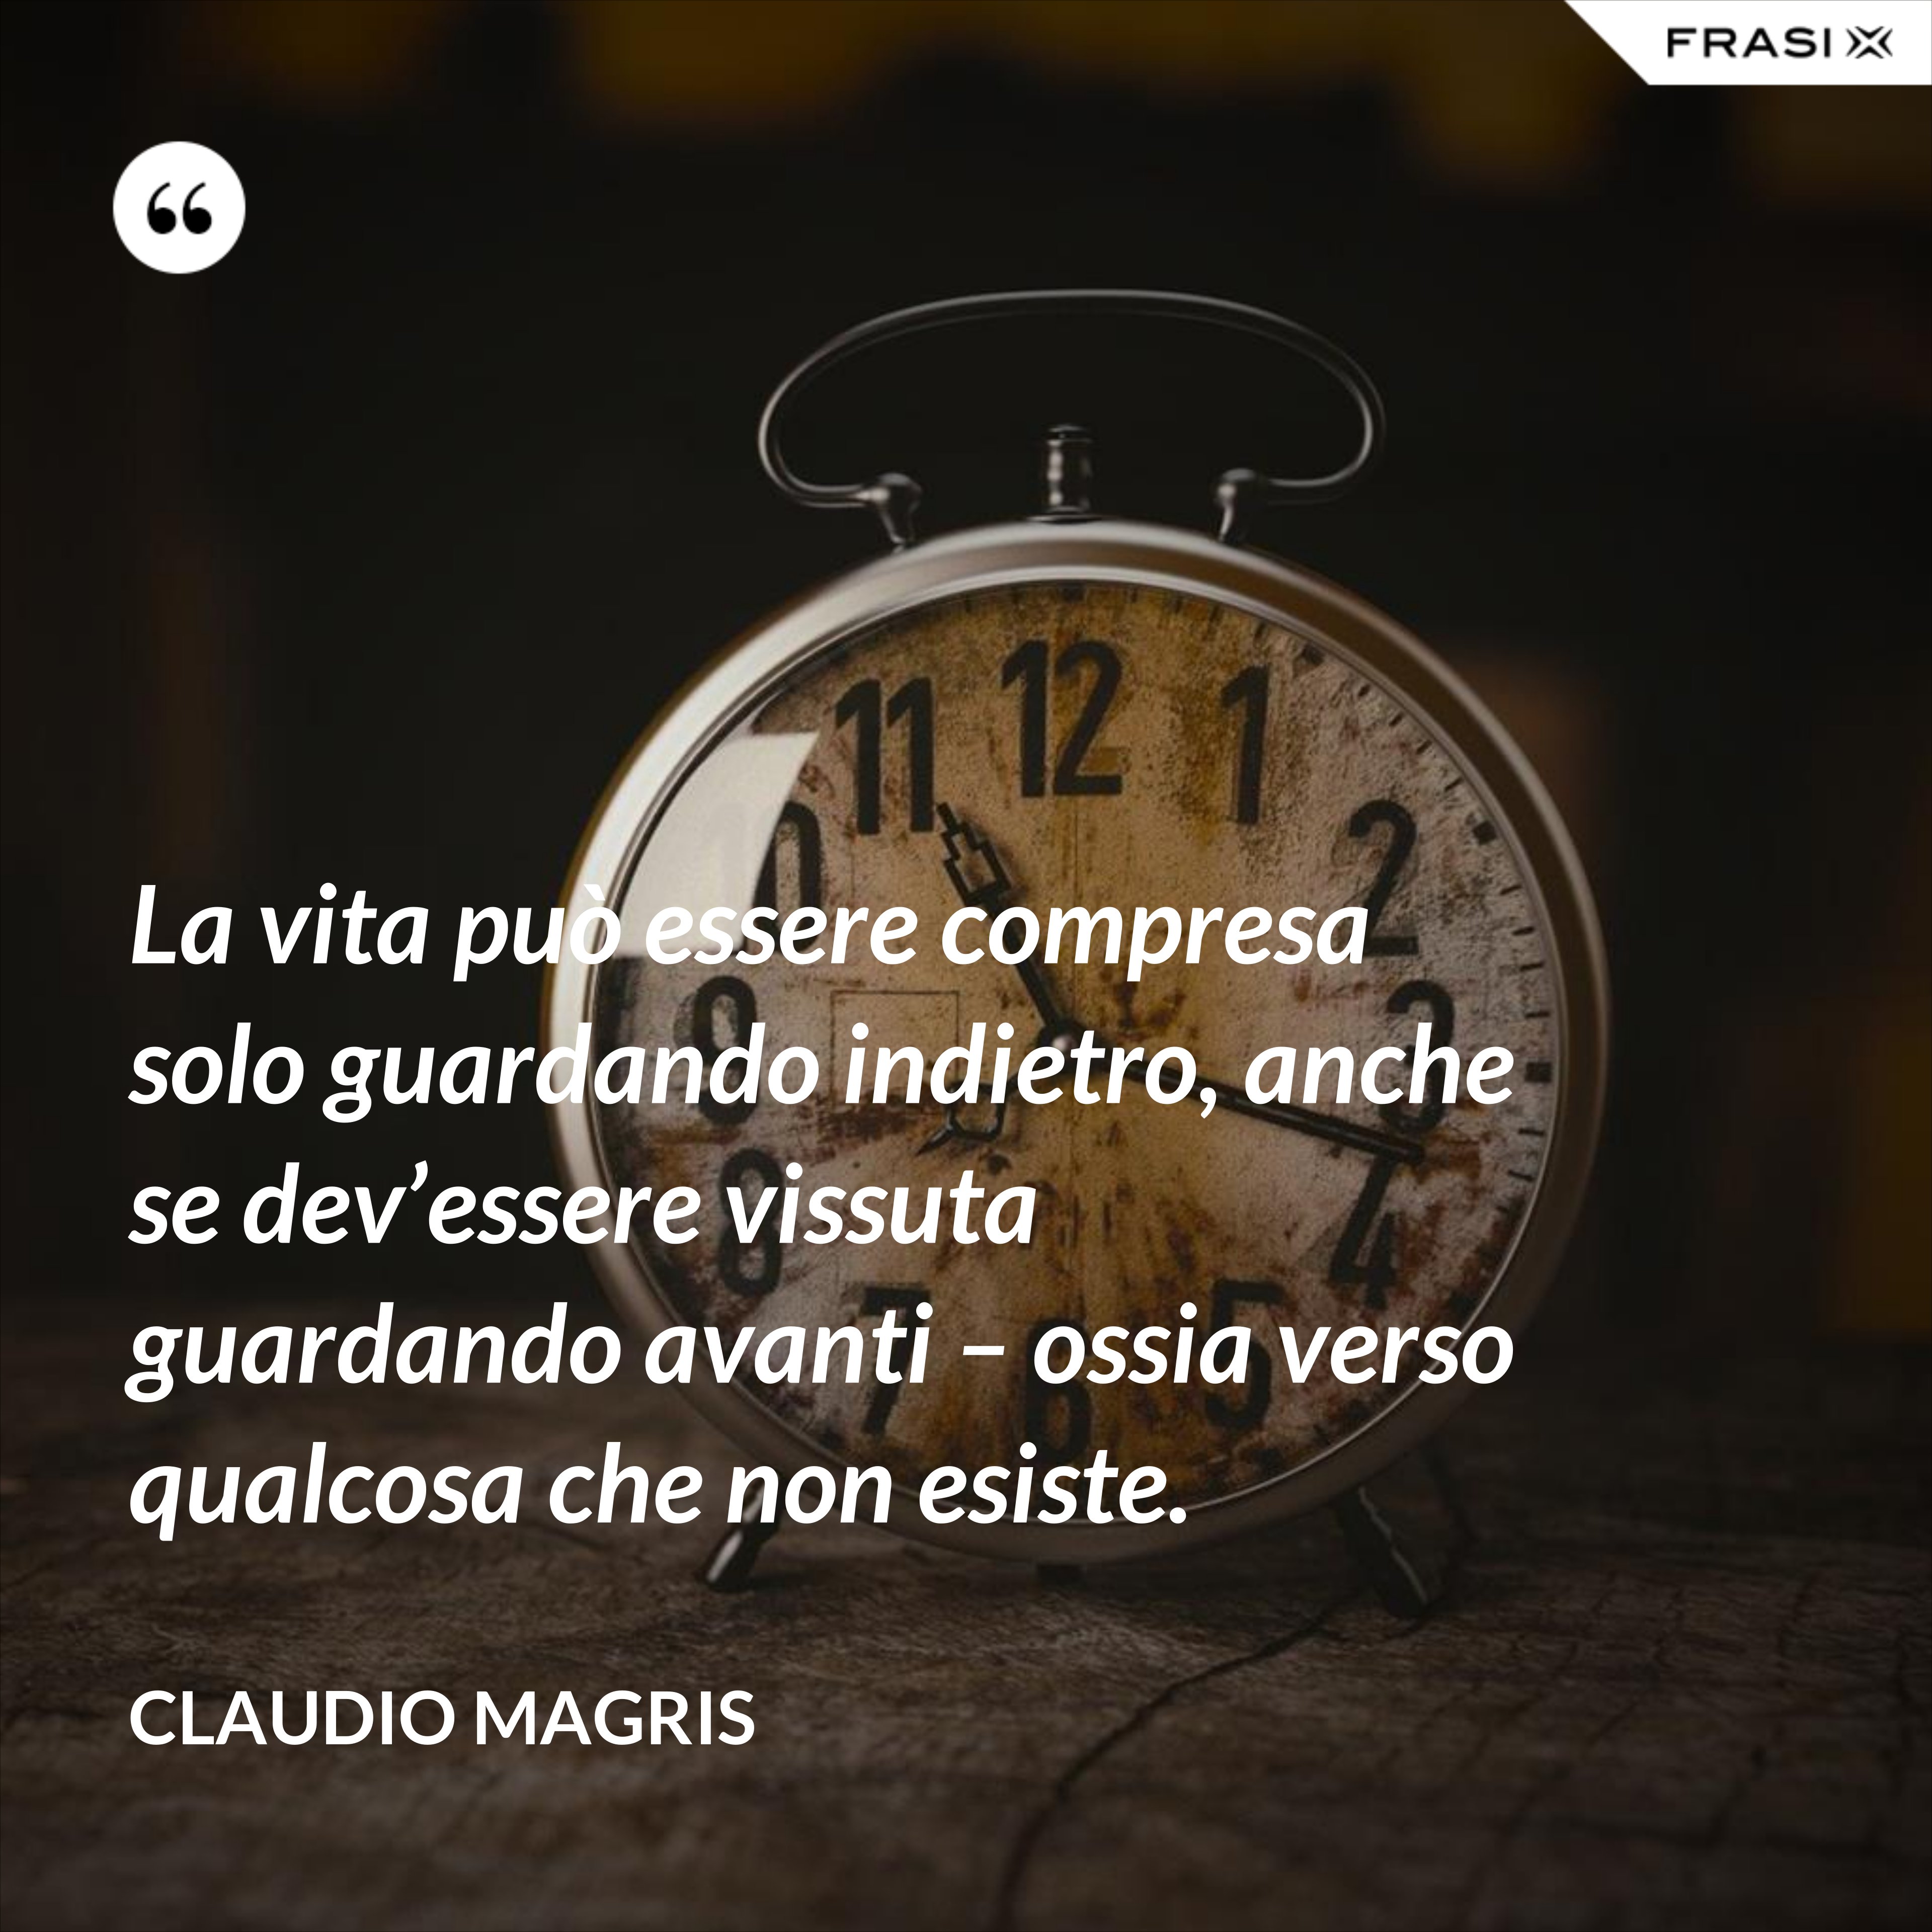 La vita può essere compresa solo guardando indietro, anche se dev’essere vissuta guardando avanti – ossia verso qualcosa che non esiste. - Claudio Magris